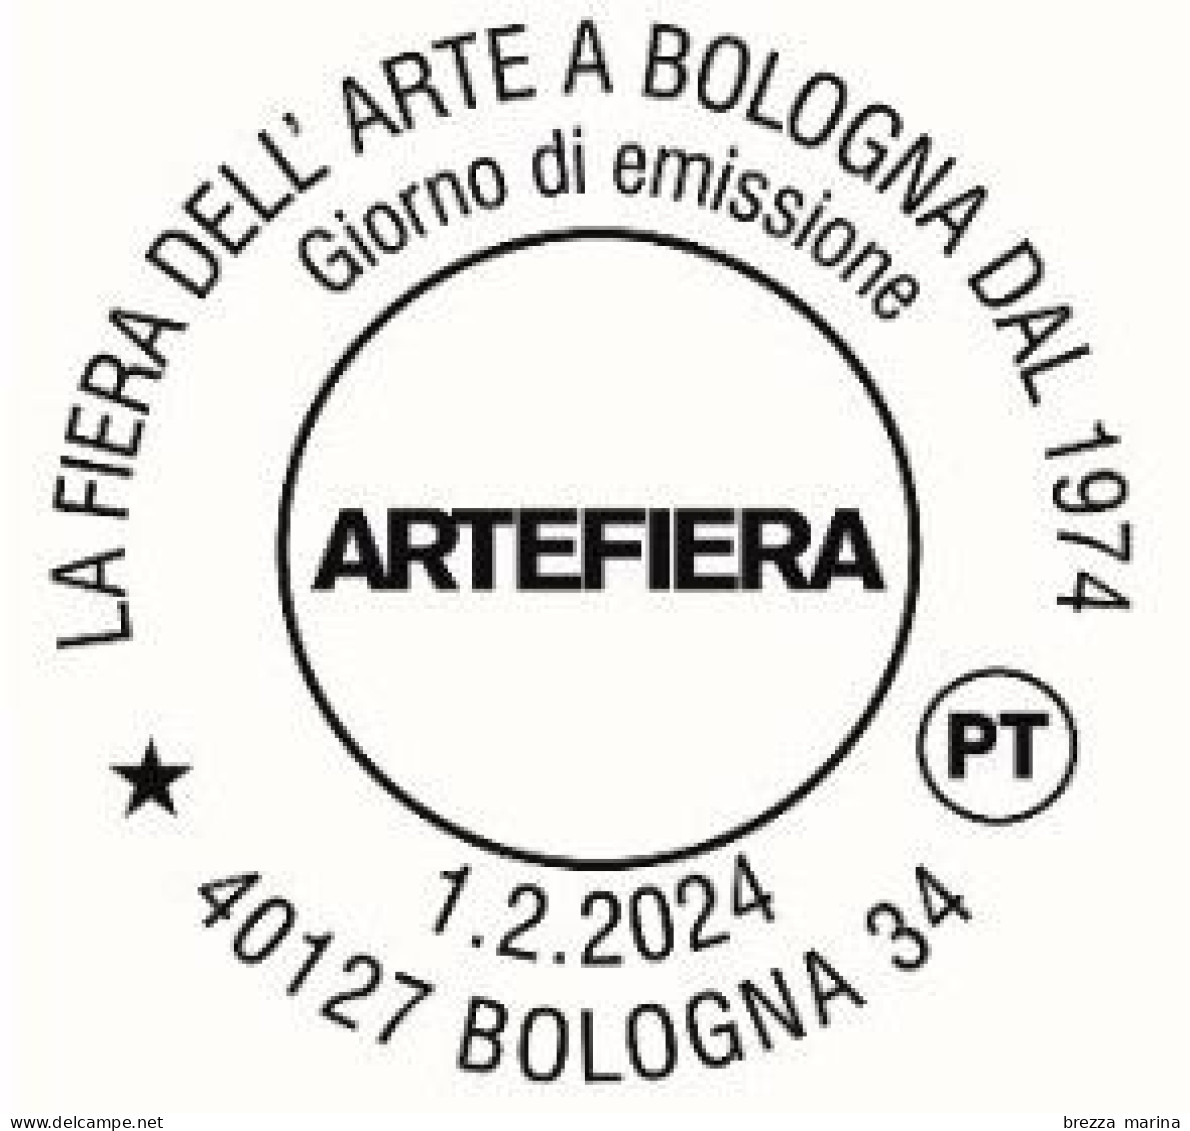 ITALIA - Usato - 2024 - 40 Anni Della Fiera Dell’arte A Bologna – Artefiera - B - 2021-...: Oblitérés